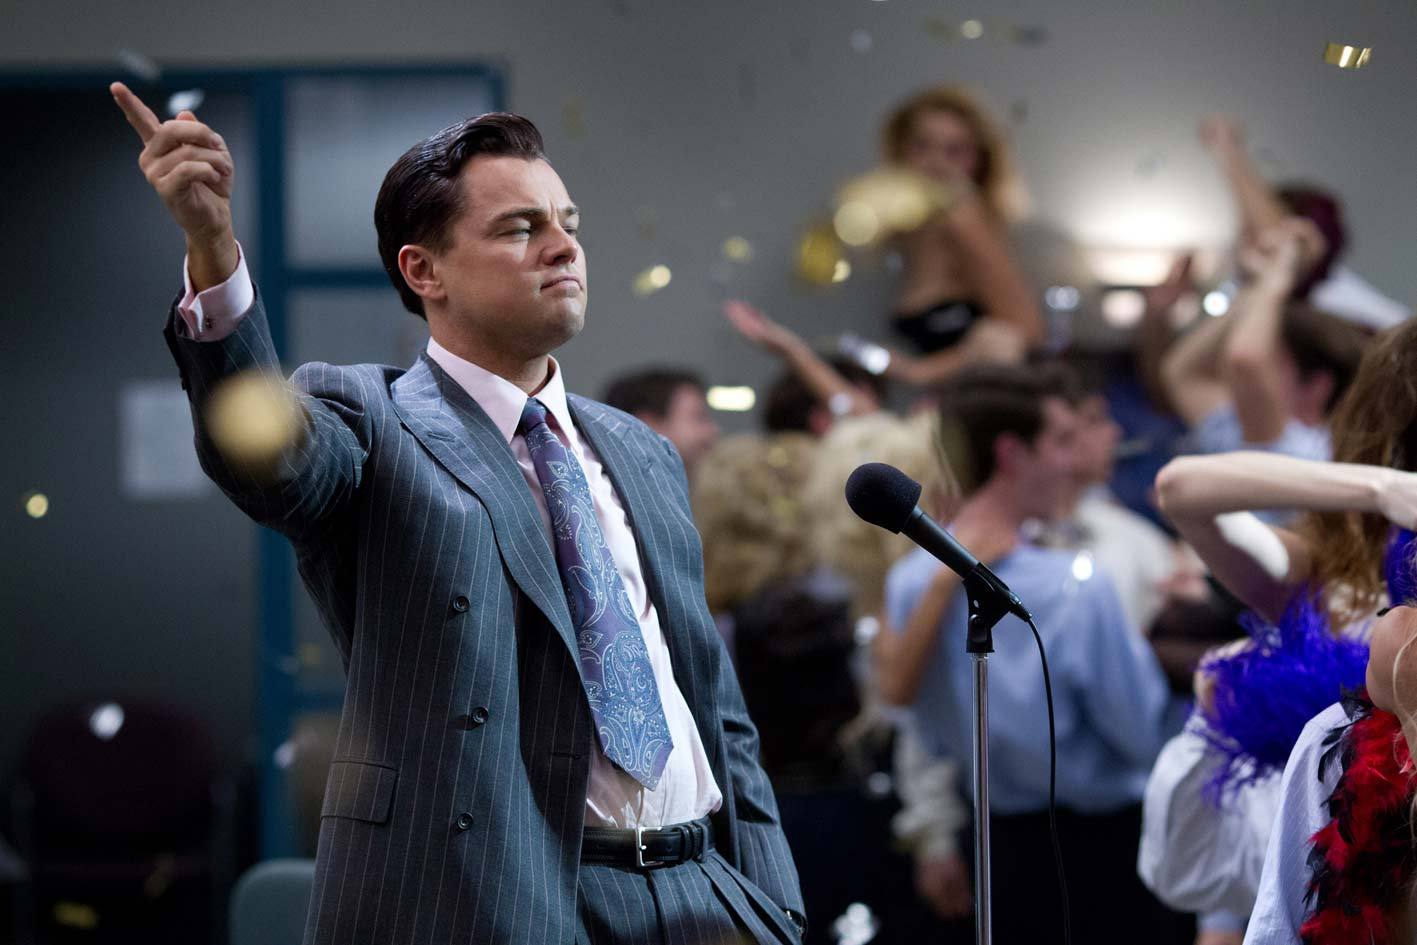 "Lupul de pe Wall Street", cel mai piratat film din 2014 pe plan mondial